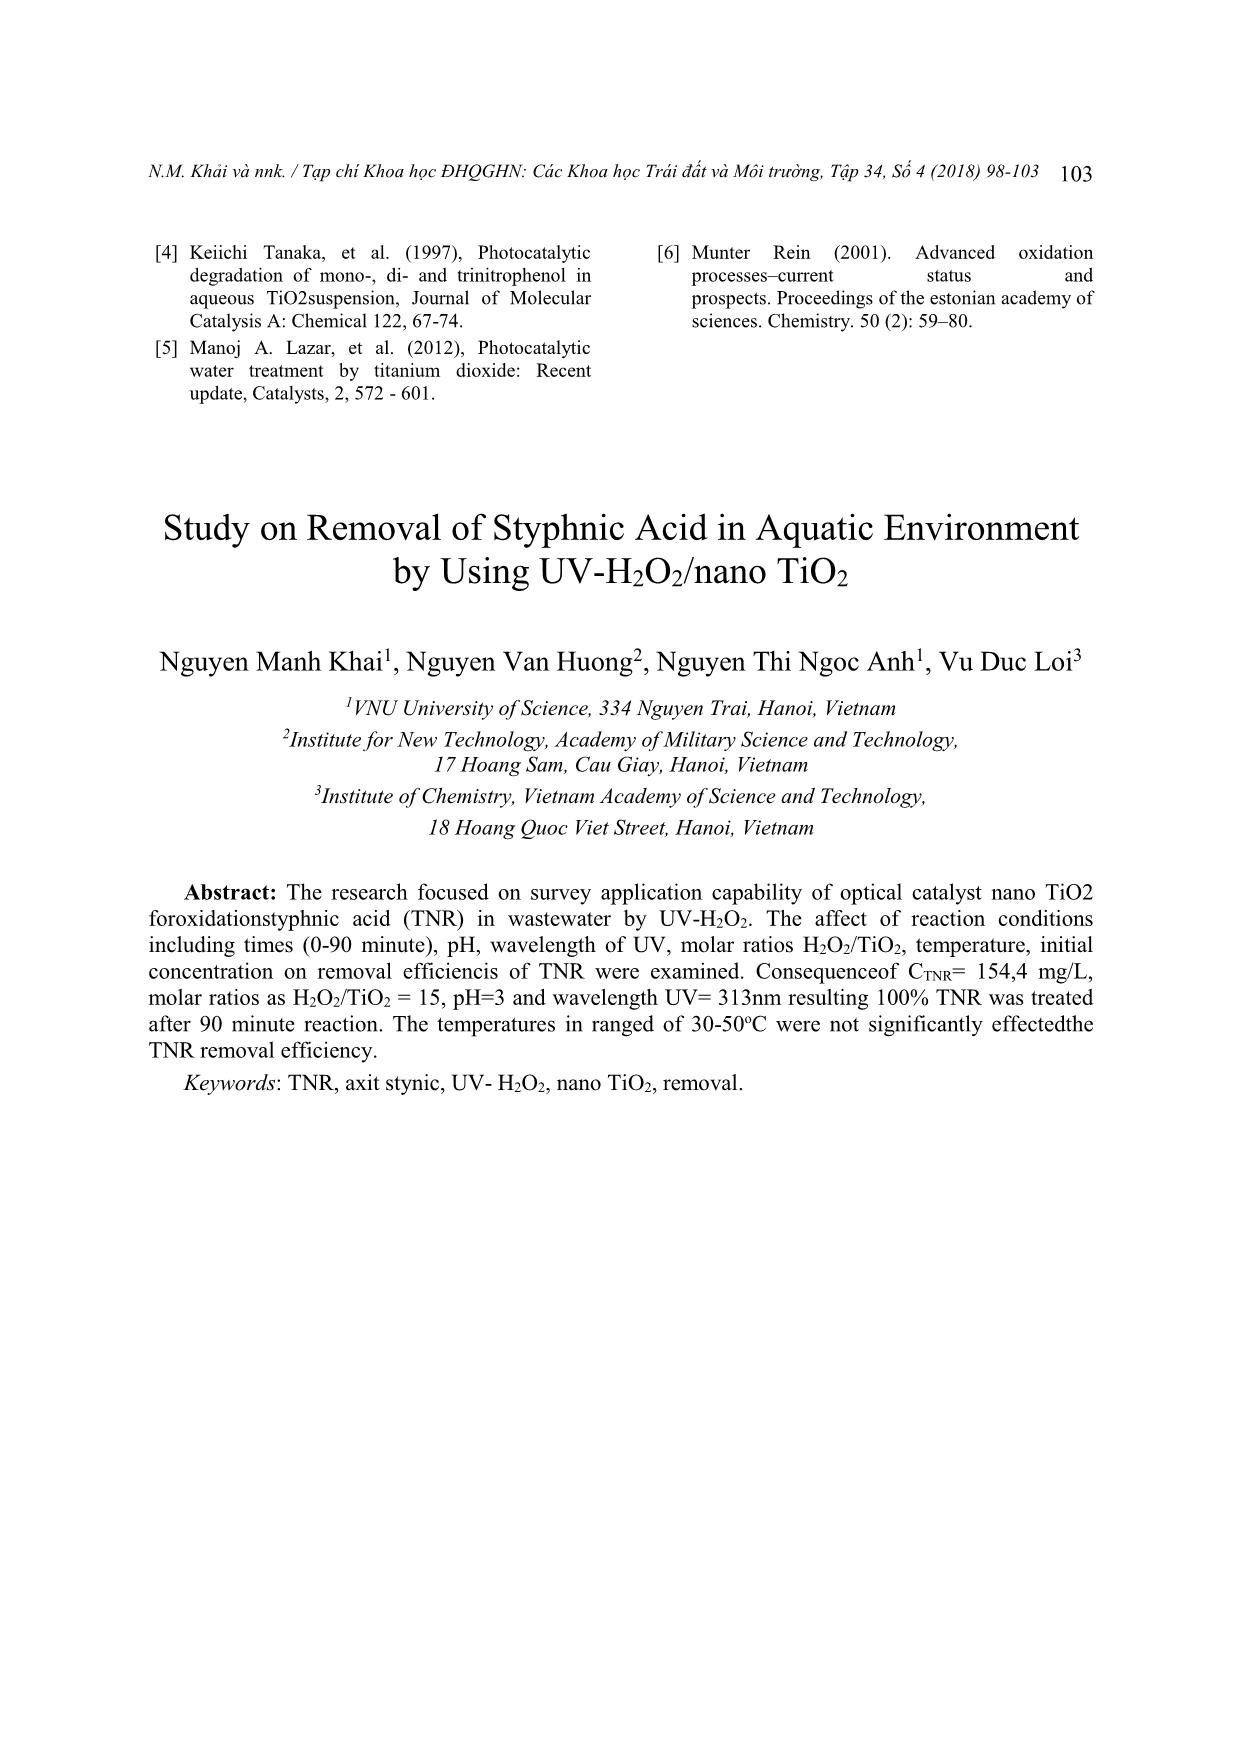 Nghiên cứu xử lý axit styphnic trong nước bằng hệ UV-H₂O₂/Nano TiO₂ trang 6